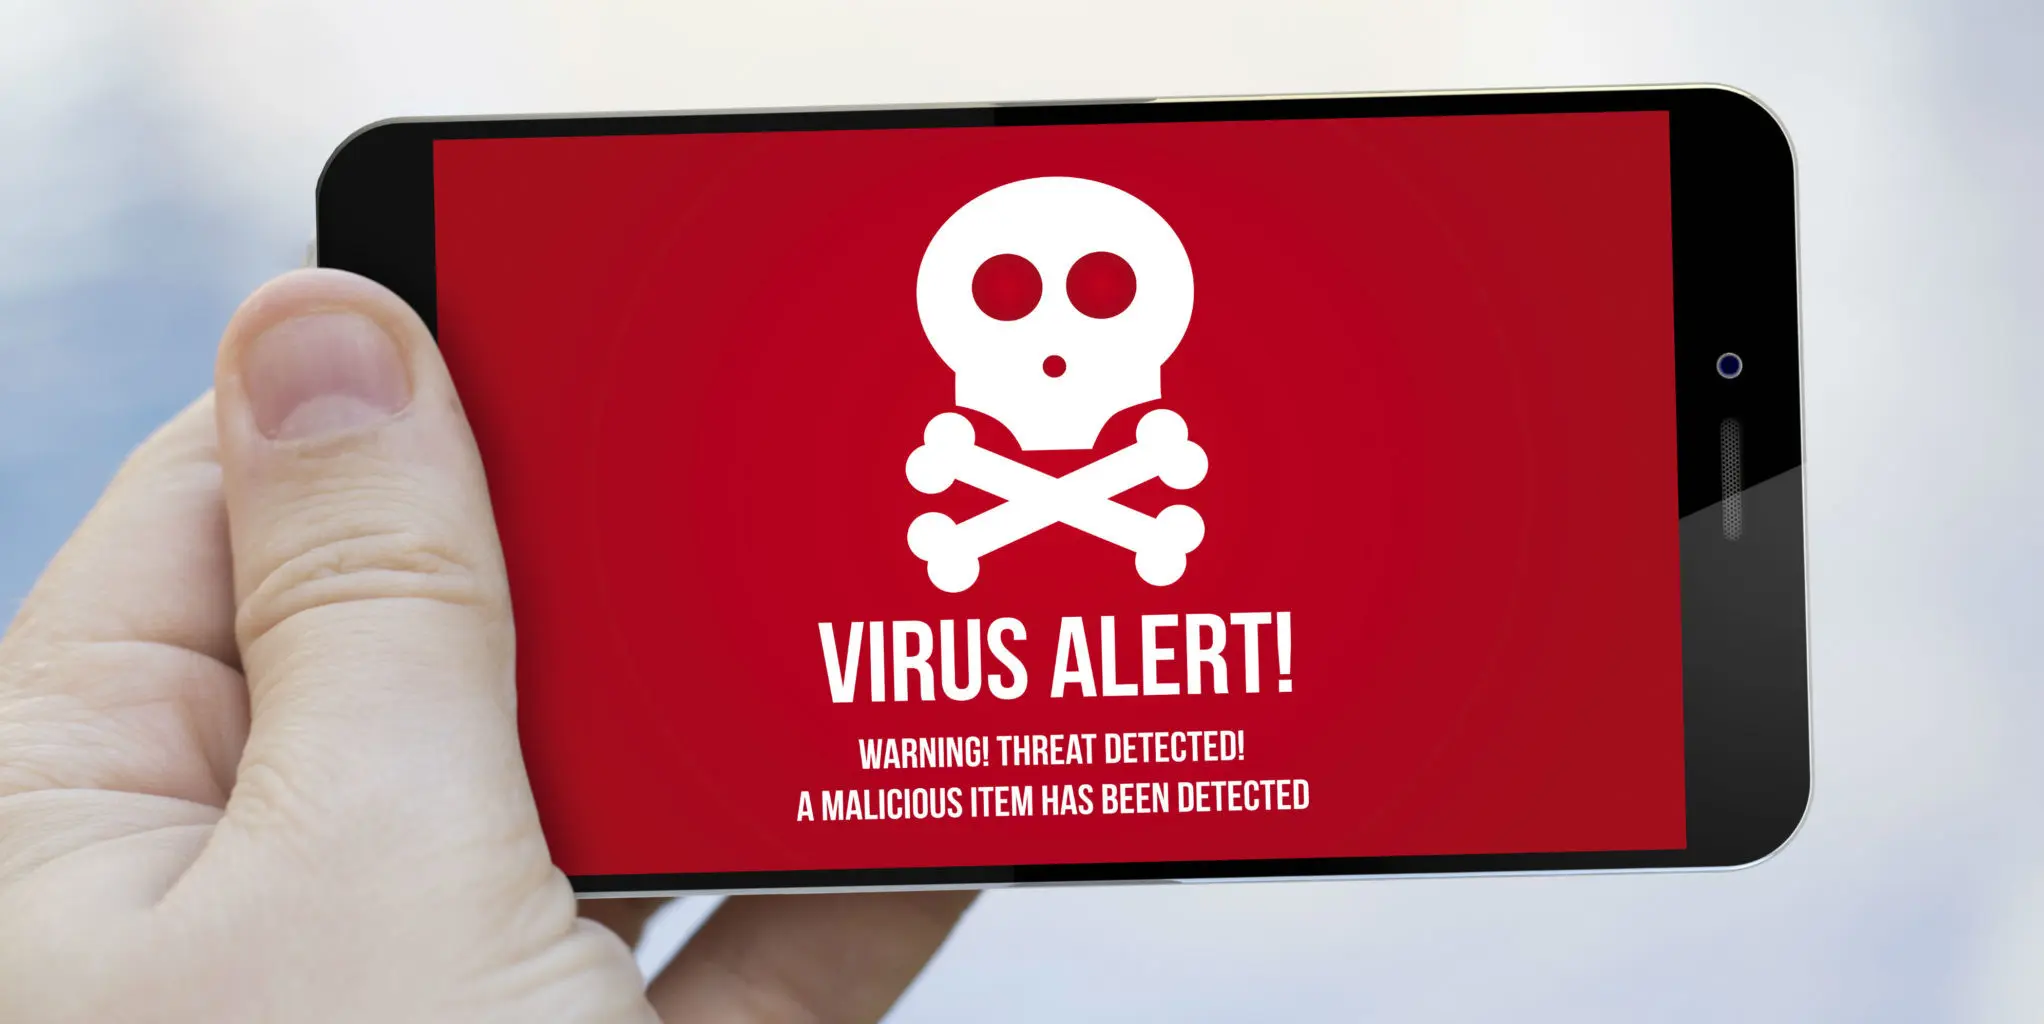 Ilustrasi: Aplikasi terserang malware (Sumber: Daily Dot)